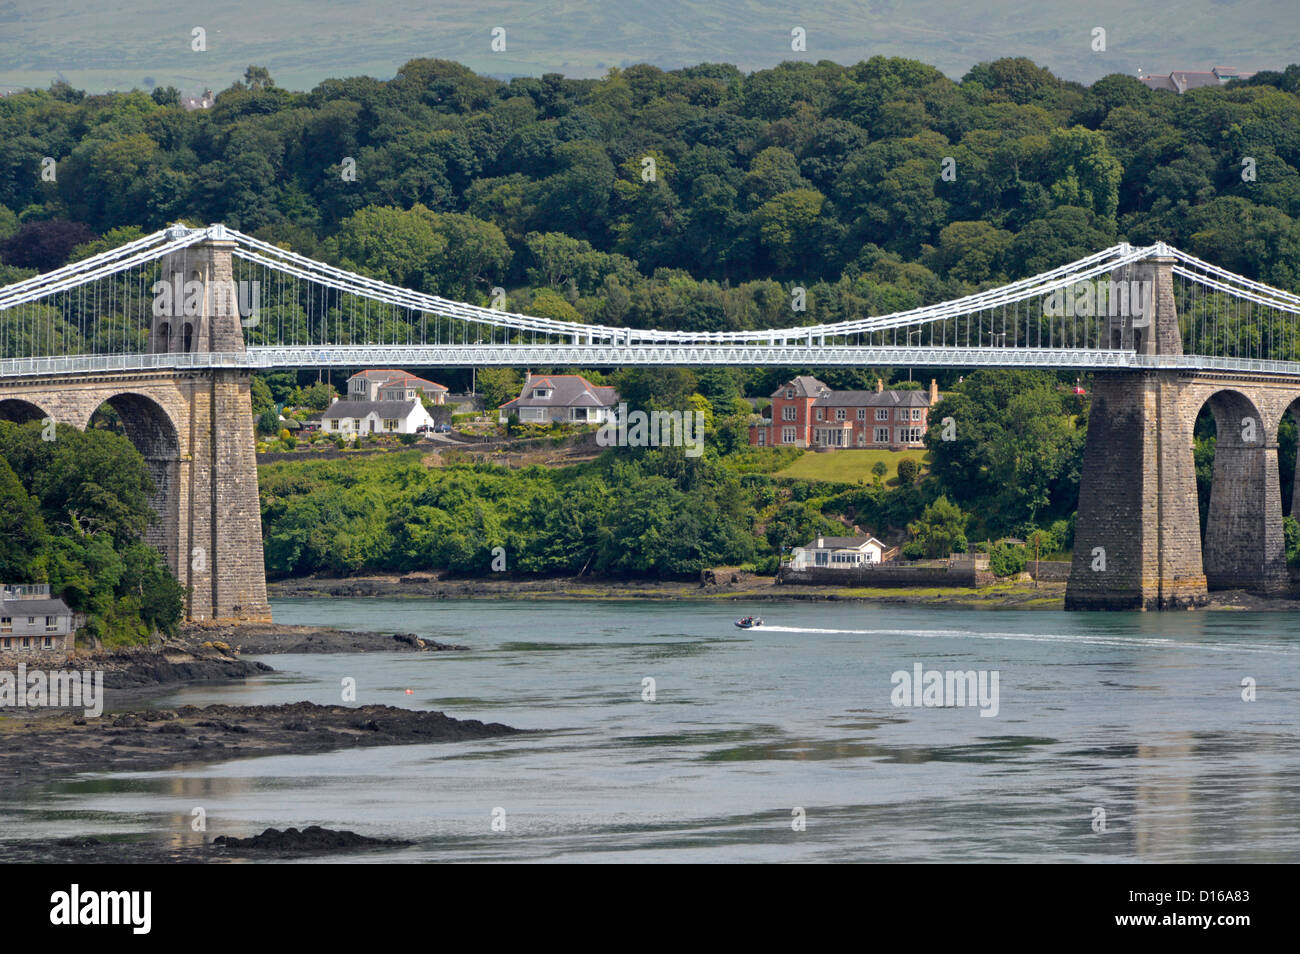 Menai Bridge, entworfen von Thomas Telford Überquerung der Menai Straits Wasserstraße auf der Straße eine Verbindung mit der Insel Anglesey im Norden von Wales in Großbritannien Stockfoto